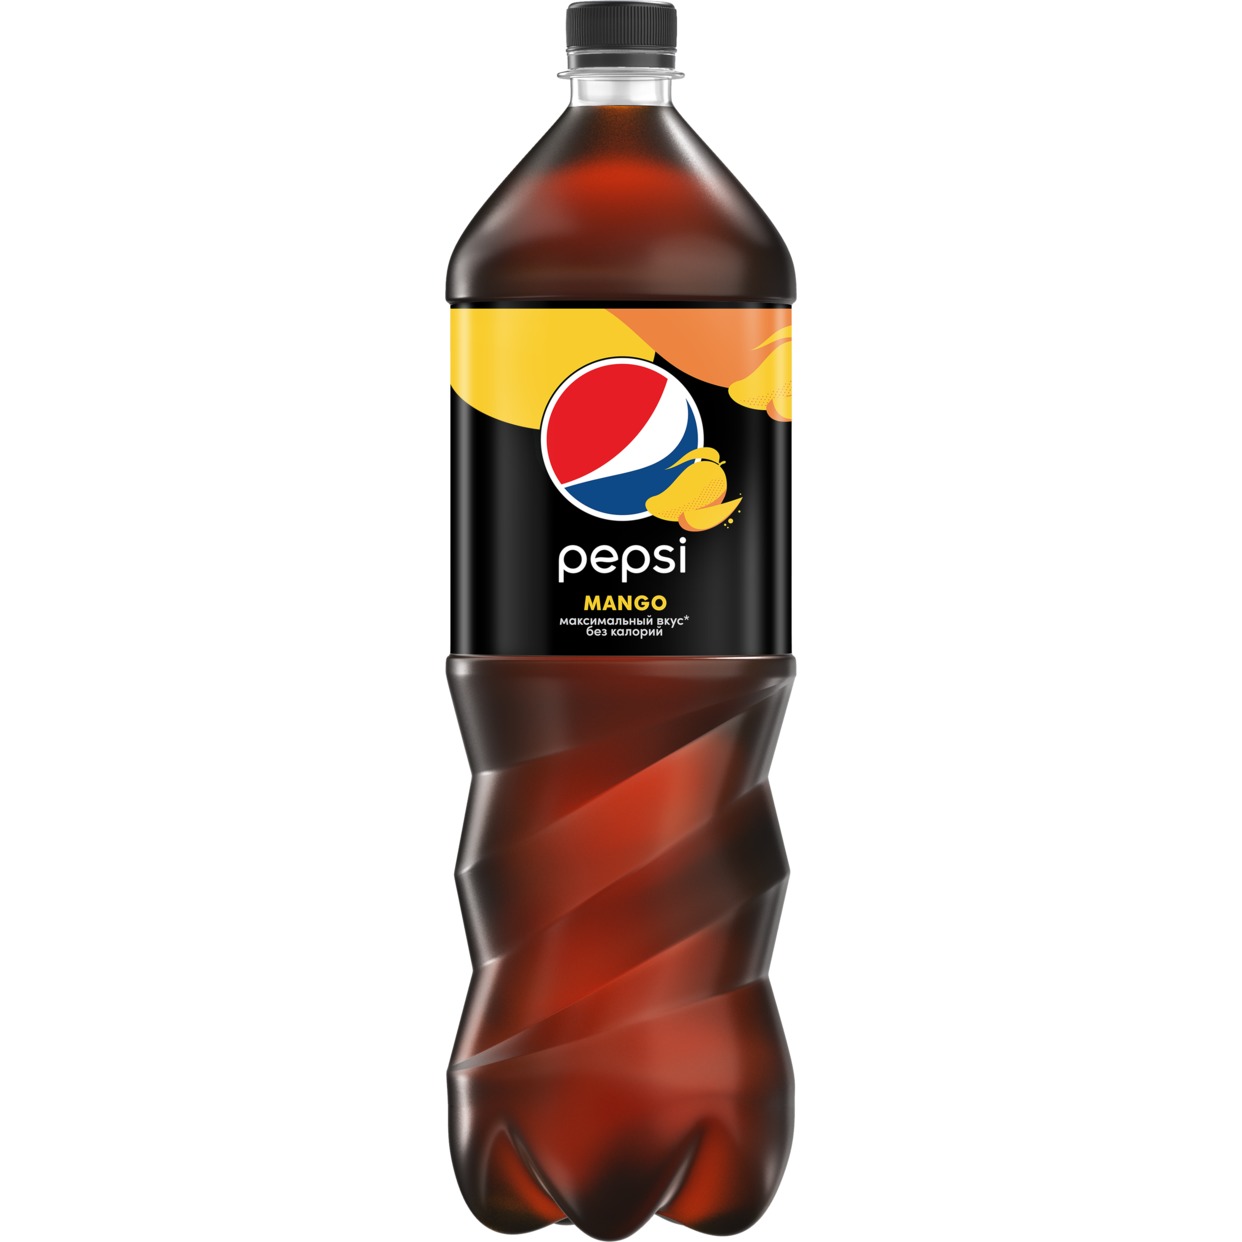 Напиток безалкогольный сильногазированный низкокалорийный "Pepsi Mango" Вкус Манго 1.5л ПЭТ 6Х по акции в Пятерочке